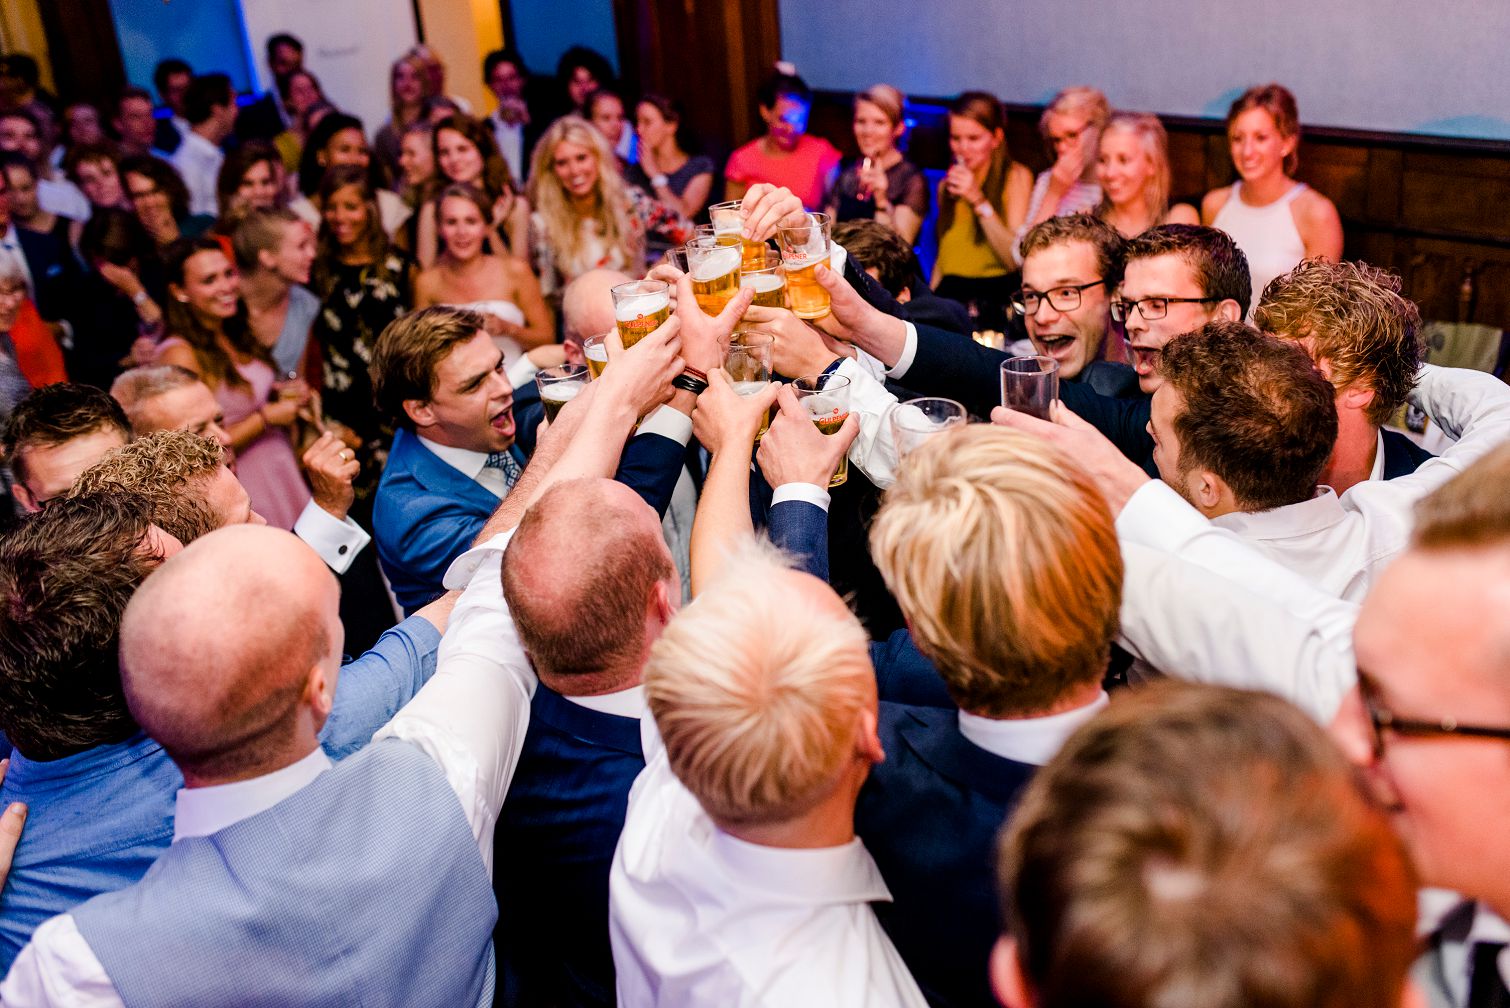 beste trouwfotograaf 2017, Parel van Zuilen, trouwfeest fotograaf